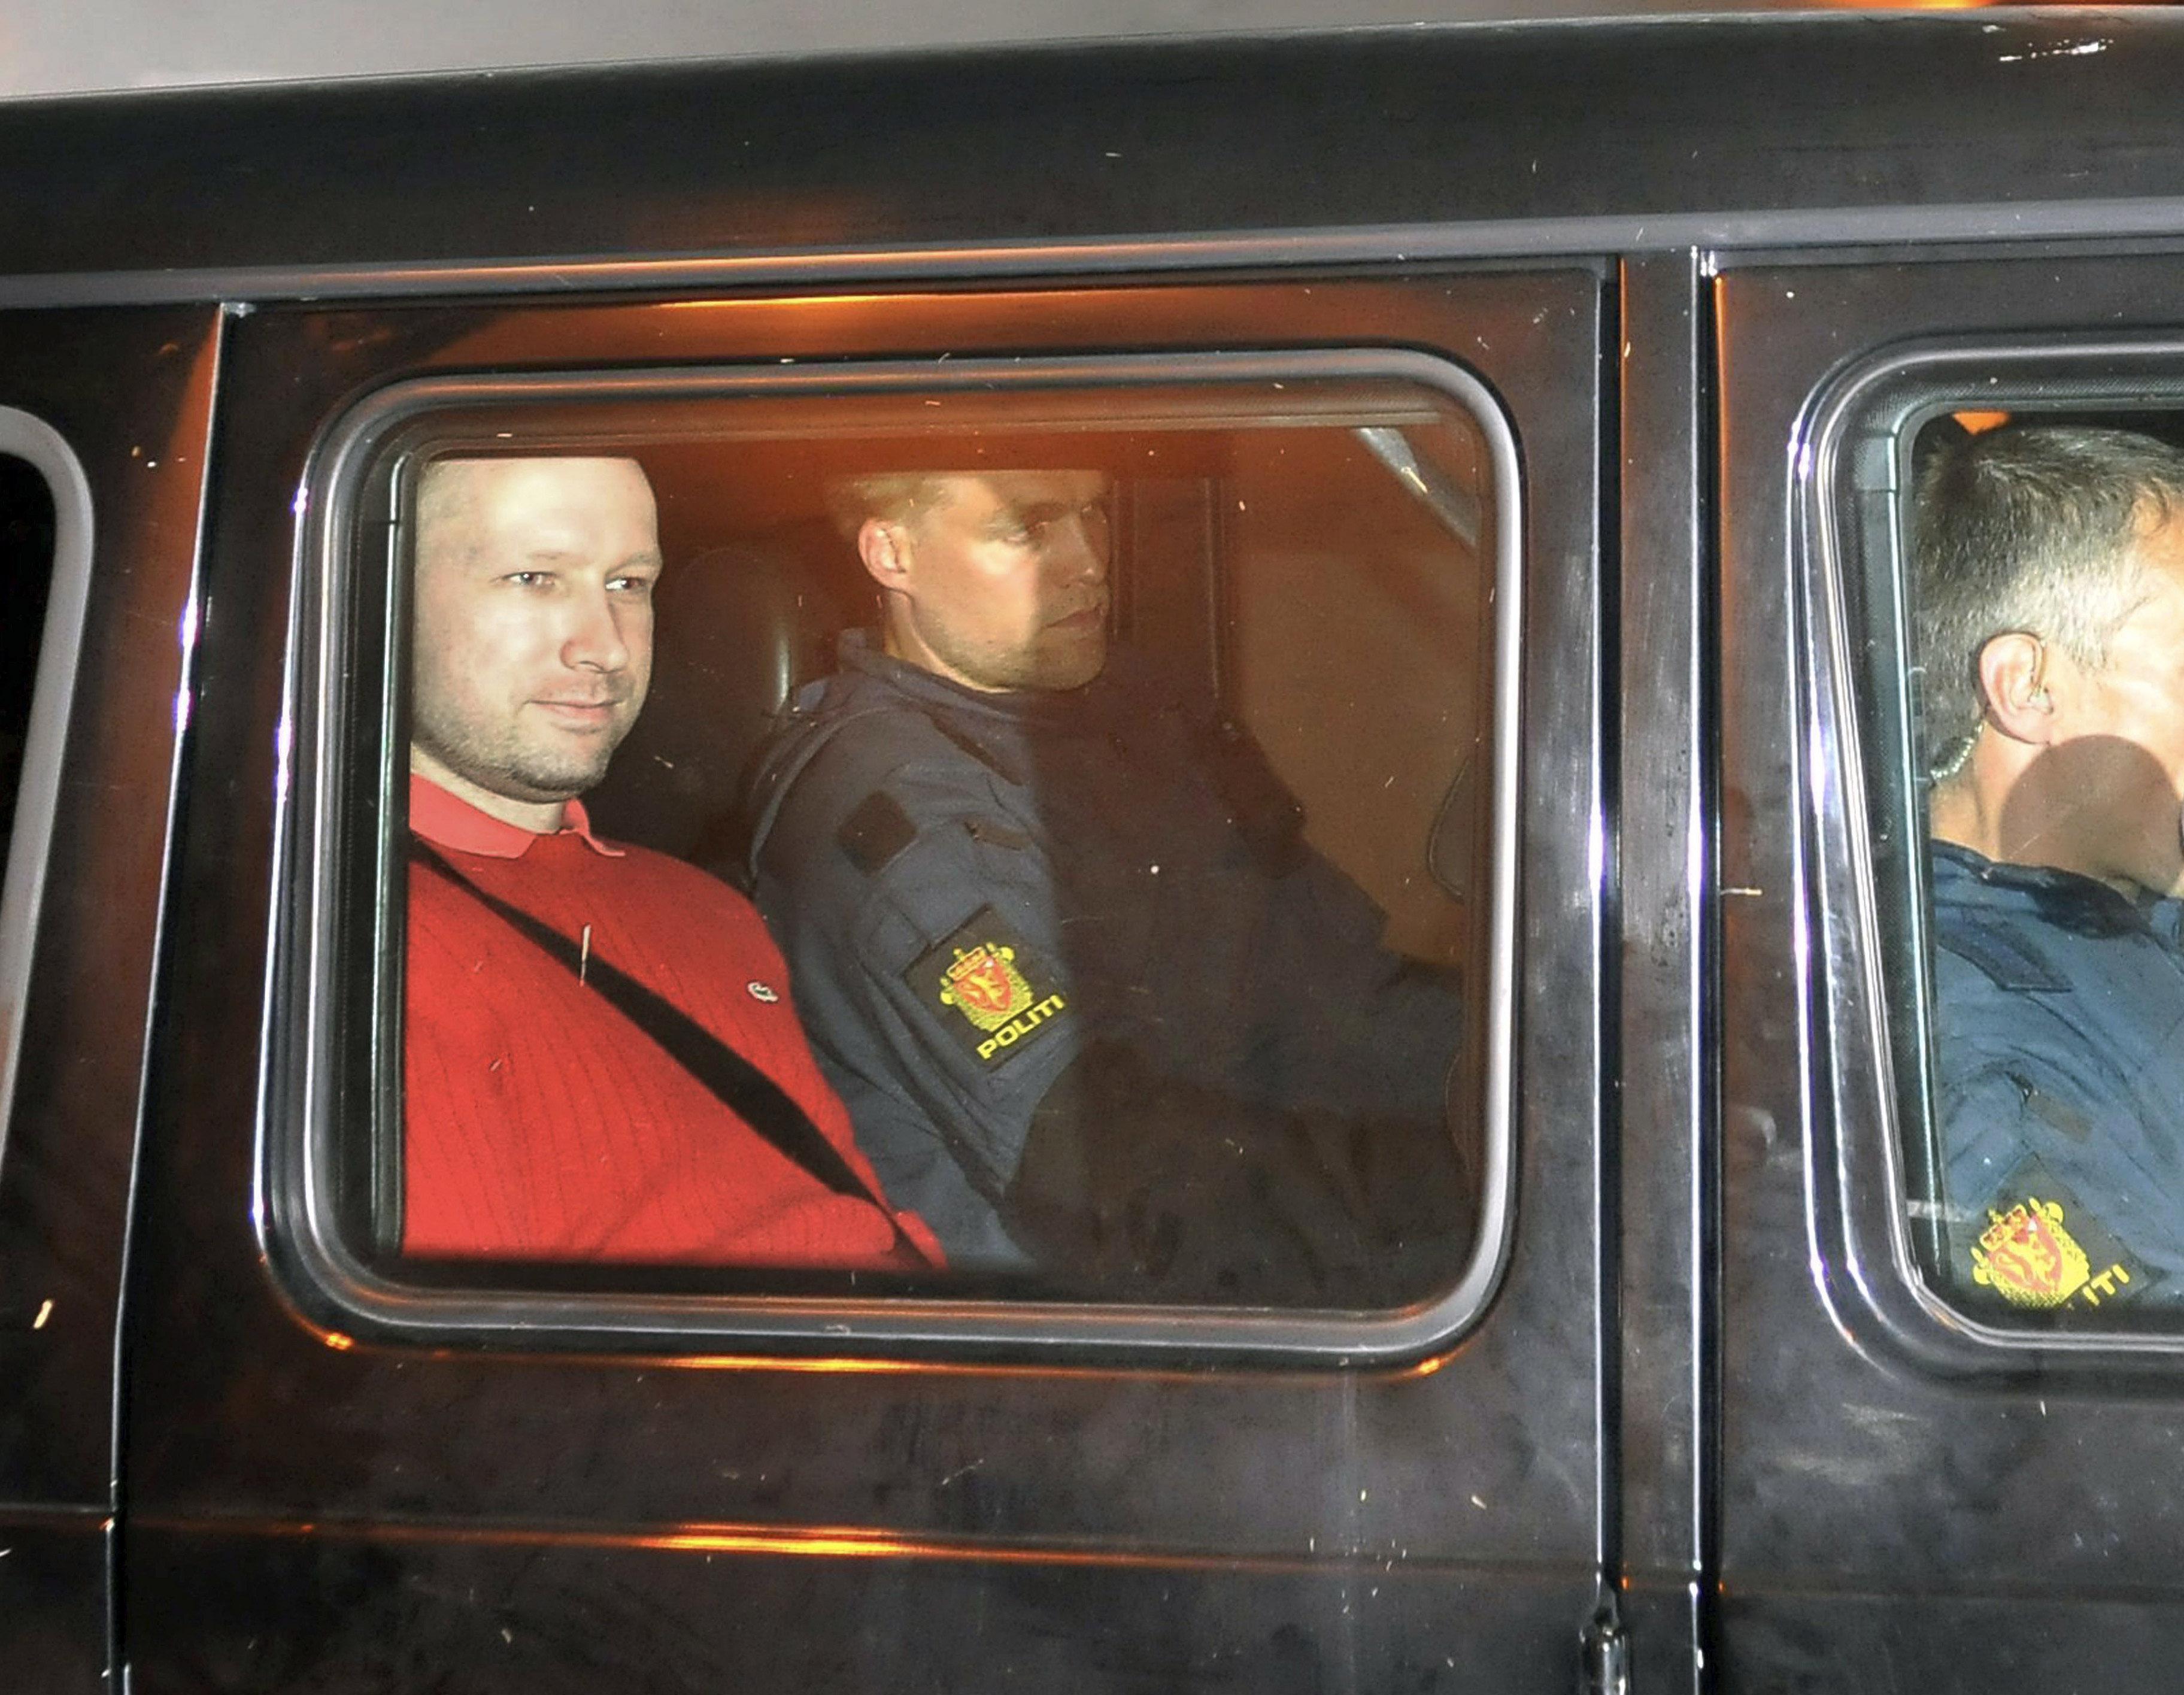 Anders Behring Breivik, suspect in the Oslo killings